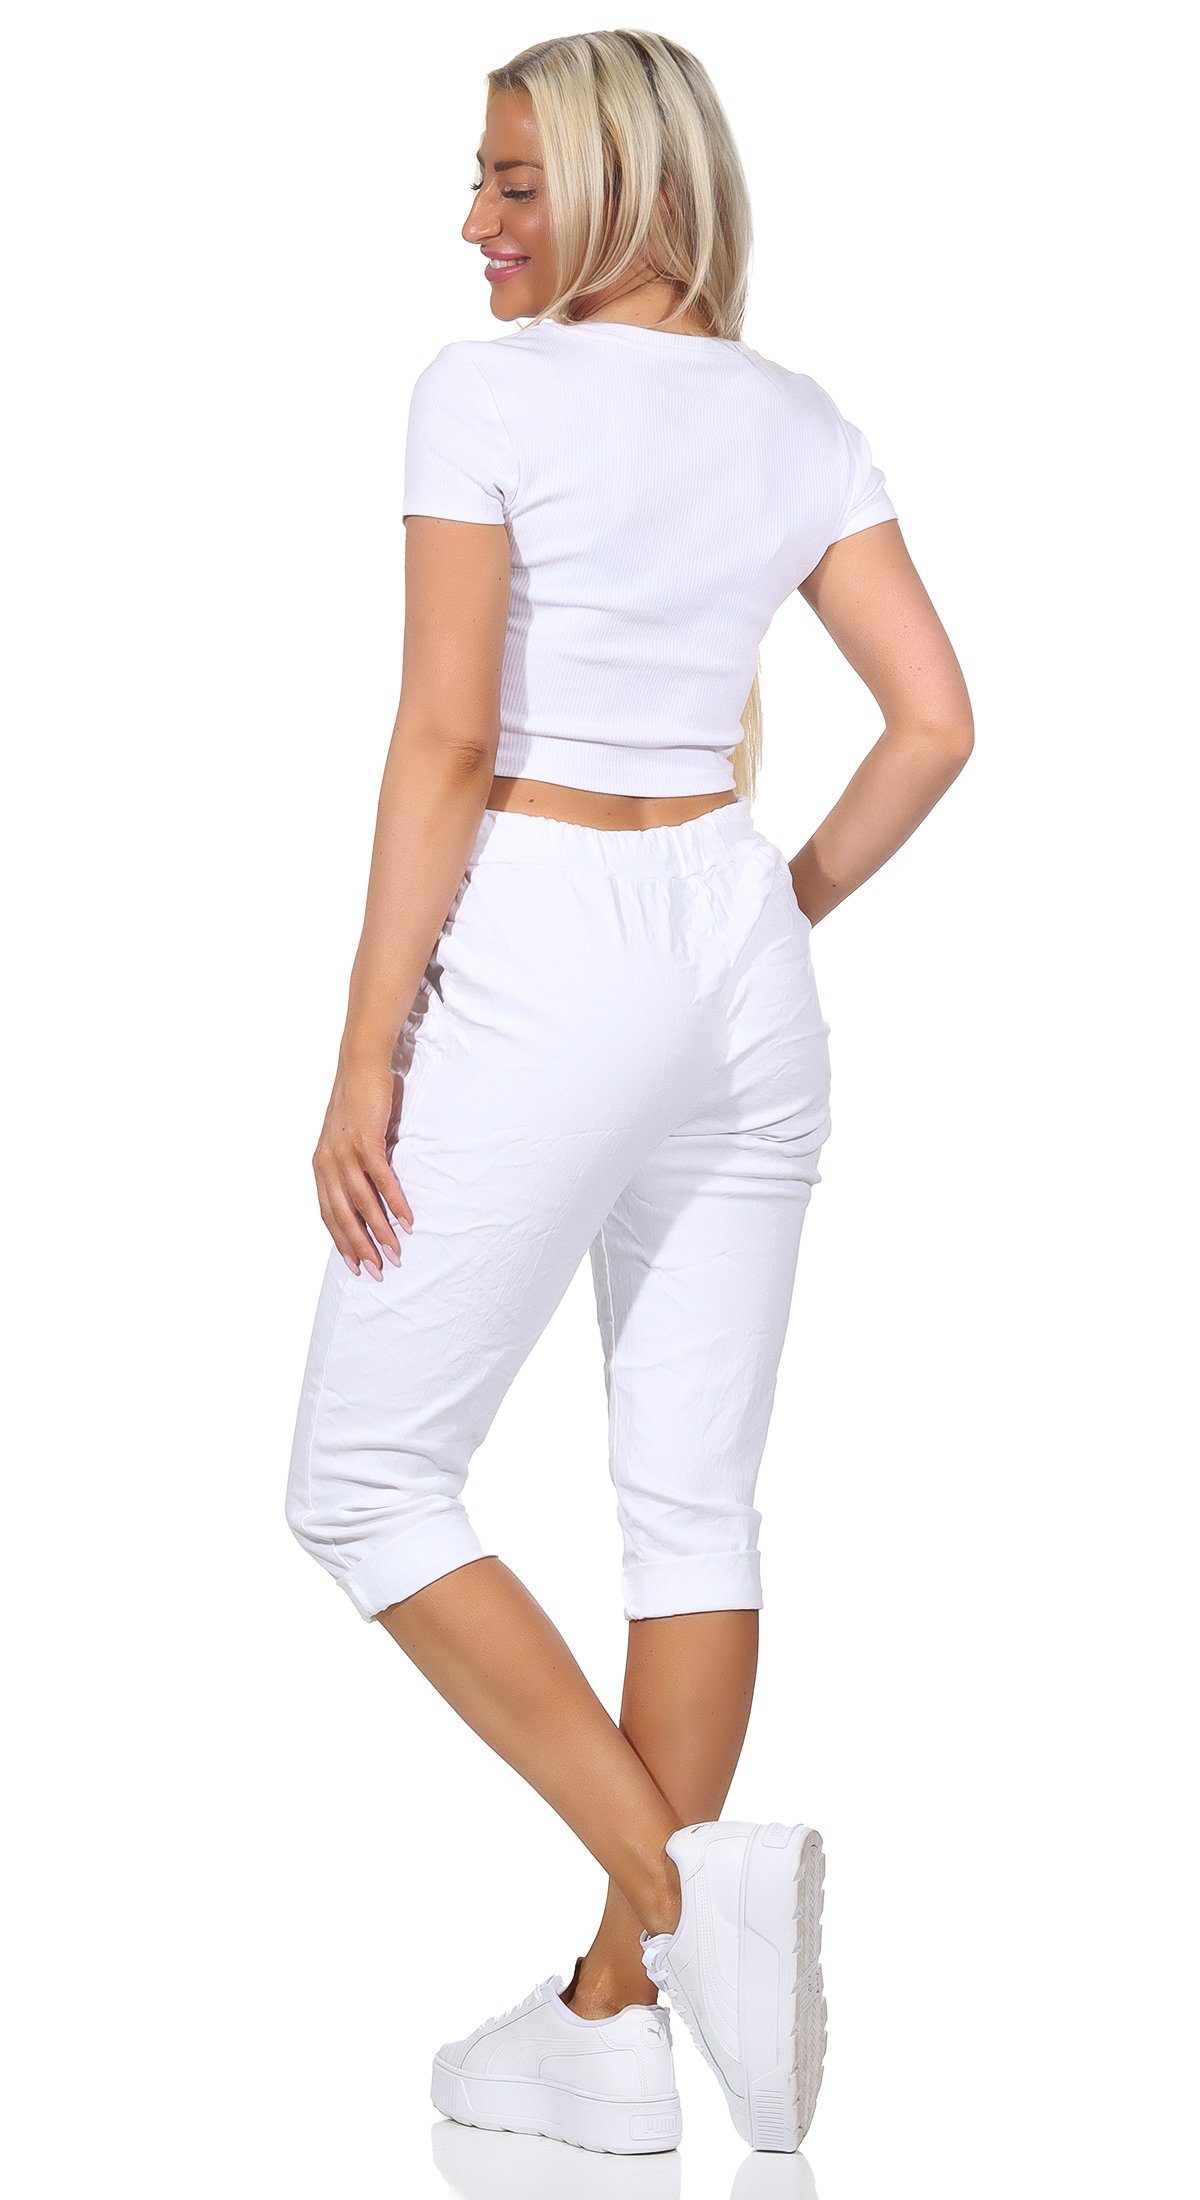 Aurela Damenmode 7/8-Hose Weiß Kordelzug, und Hose in Bermuda Jeans Sommerhose sommerlichen Kurze 36-44 Farben, Damen Taschen Capri